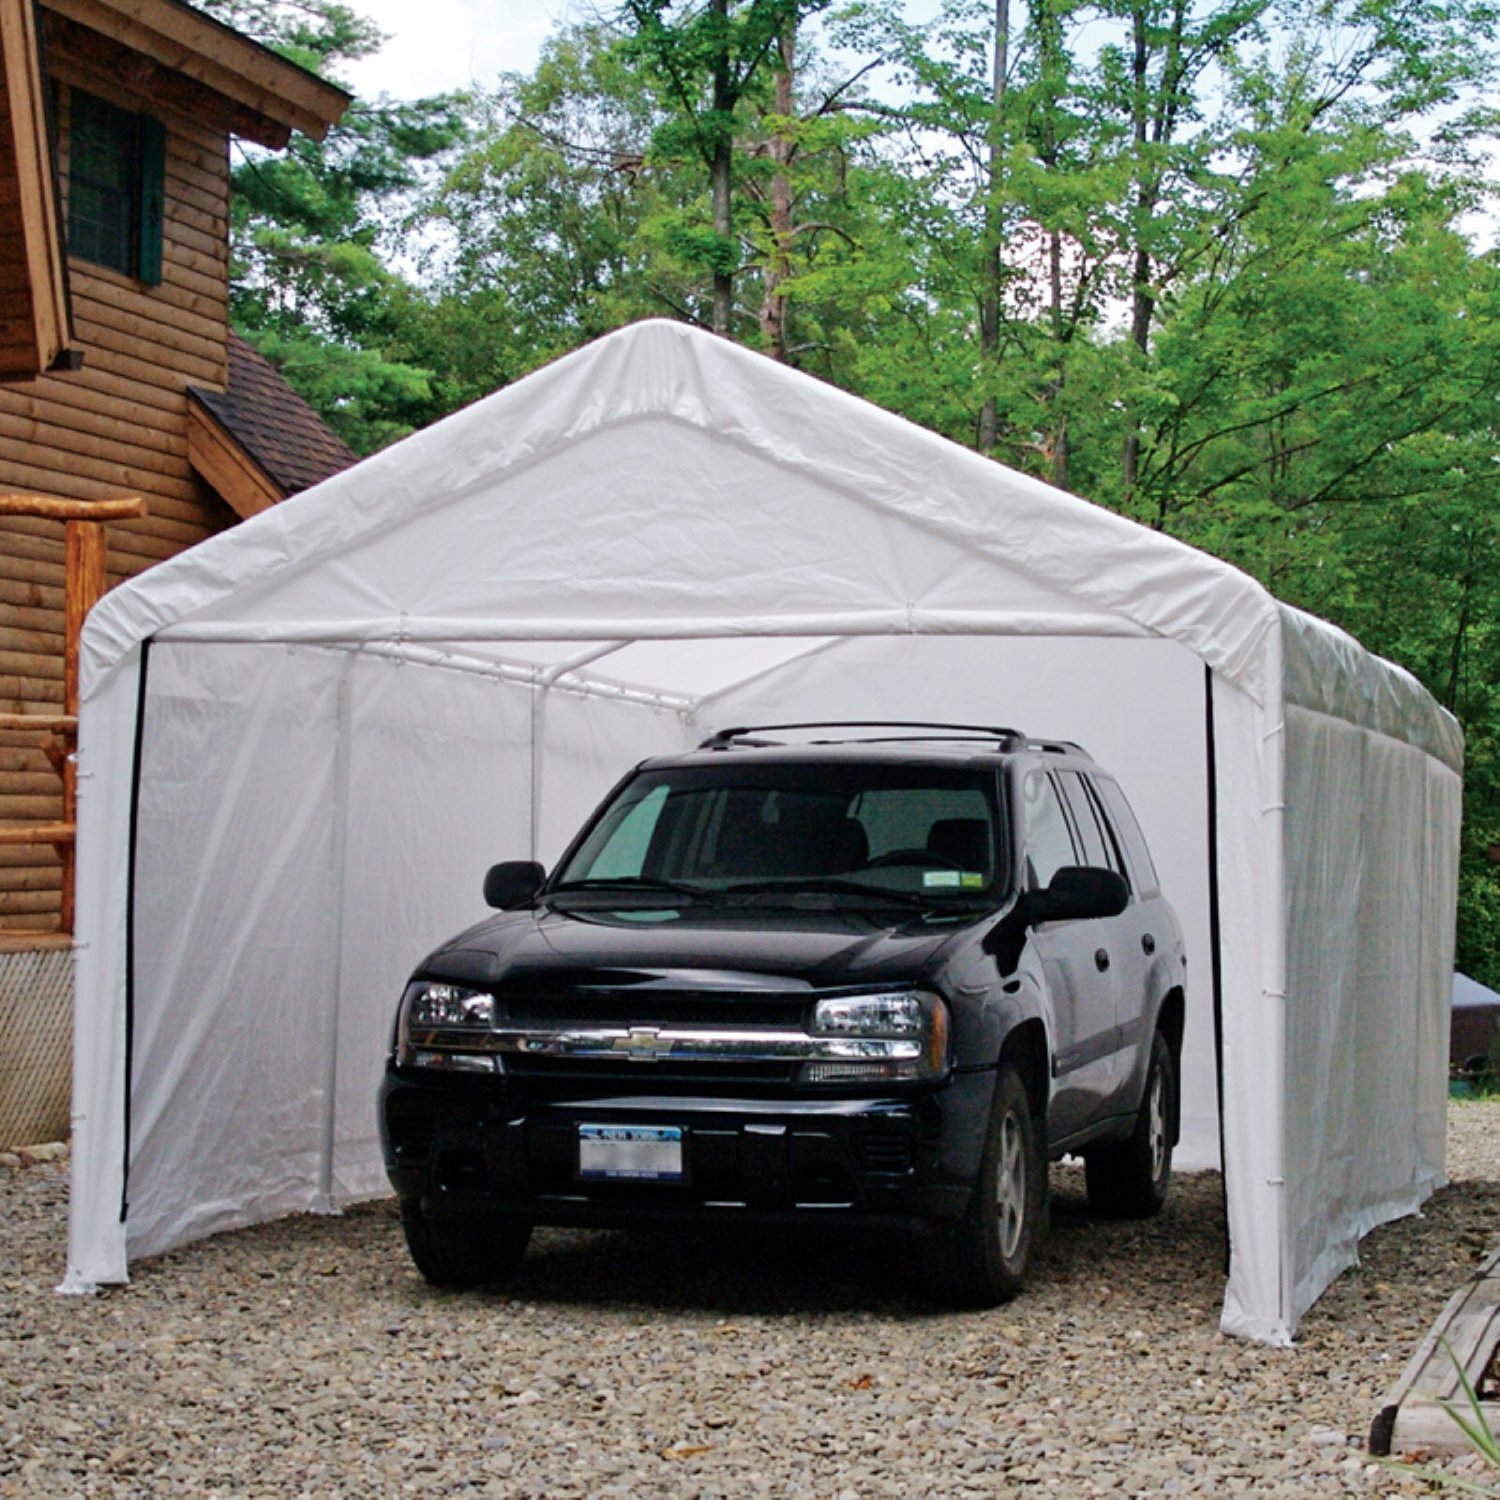 ShelterLogic 10' x 20' Canopy Enclosure Kit